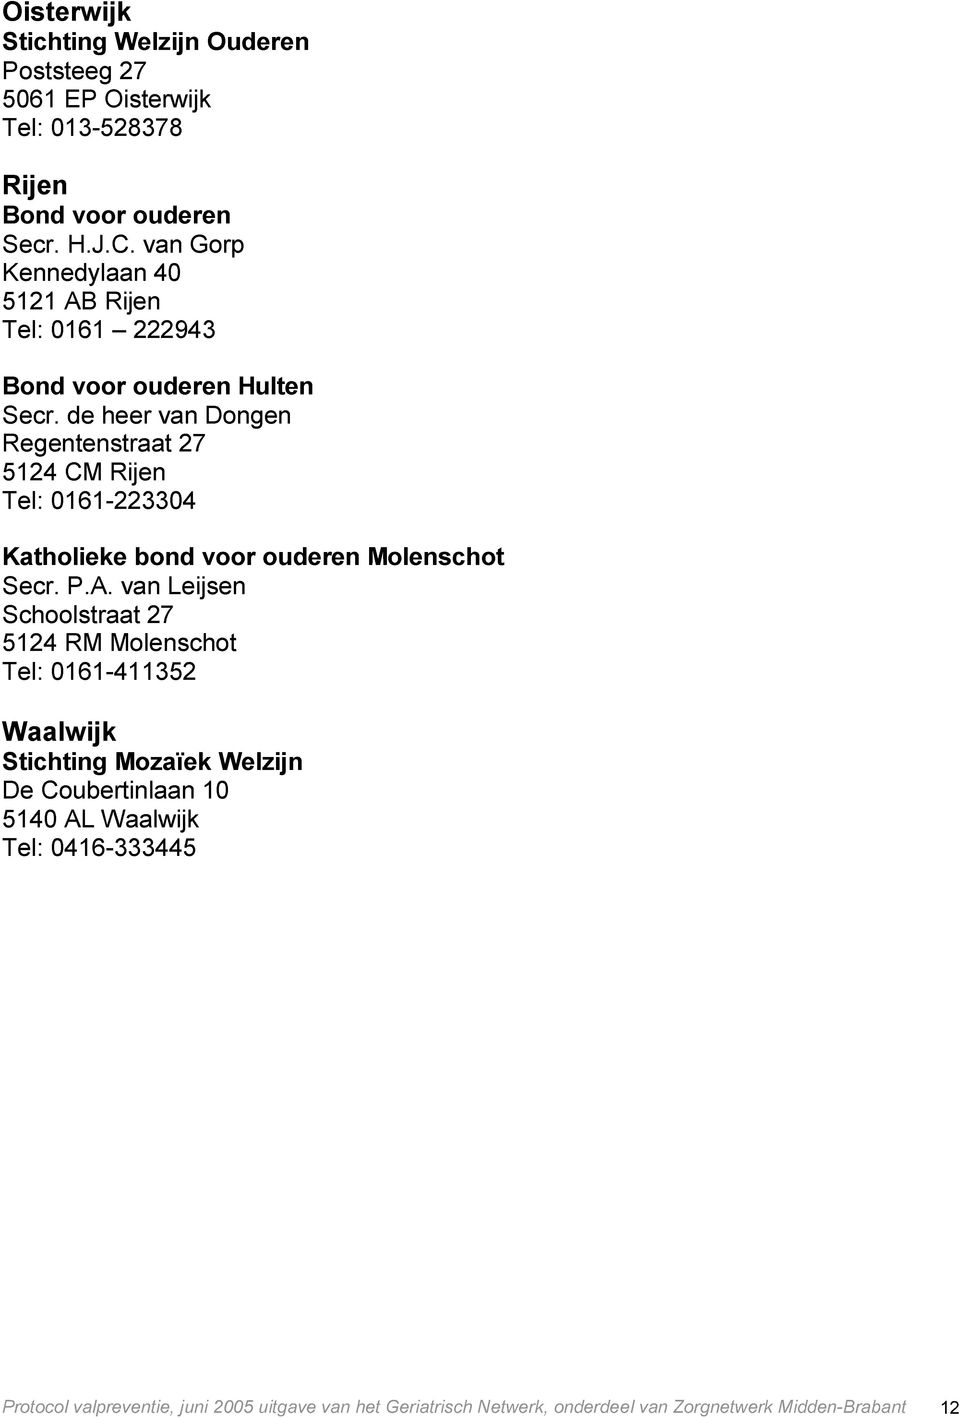 de heer van Dongen Regentenstraat 27 5124 CM Rijen Tel: 0161-223304 Katholieke bond voor ouderen Molenschot Secr. P.A.